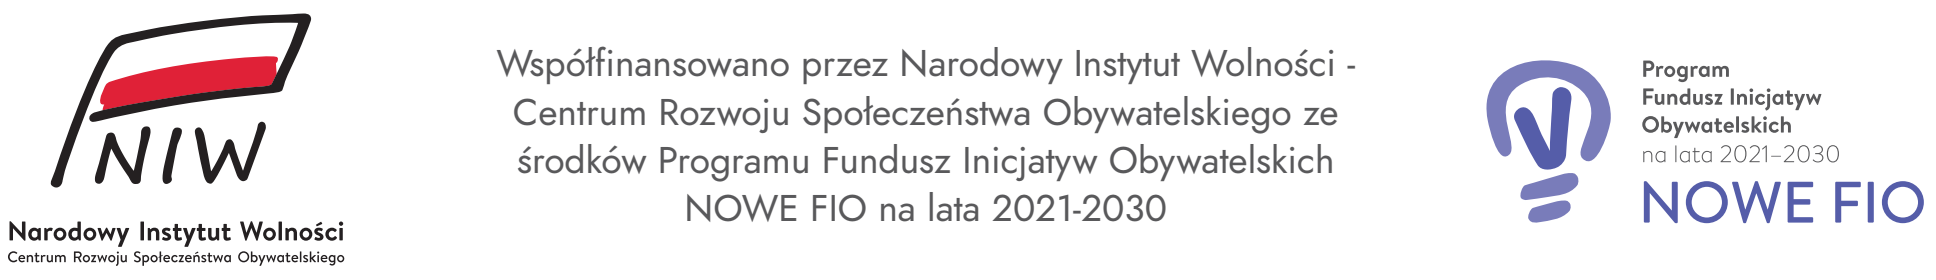 Współfinansowano przez Narodowy Instytut Wolności Centrum Rozwoju Społeczeństwa obywatelskiego ze środków Programu Fundusz Inicjatyw Obywatelskich NOWE FIO na lata 2021-2030